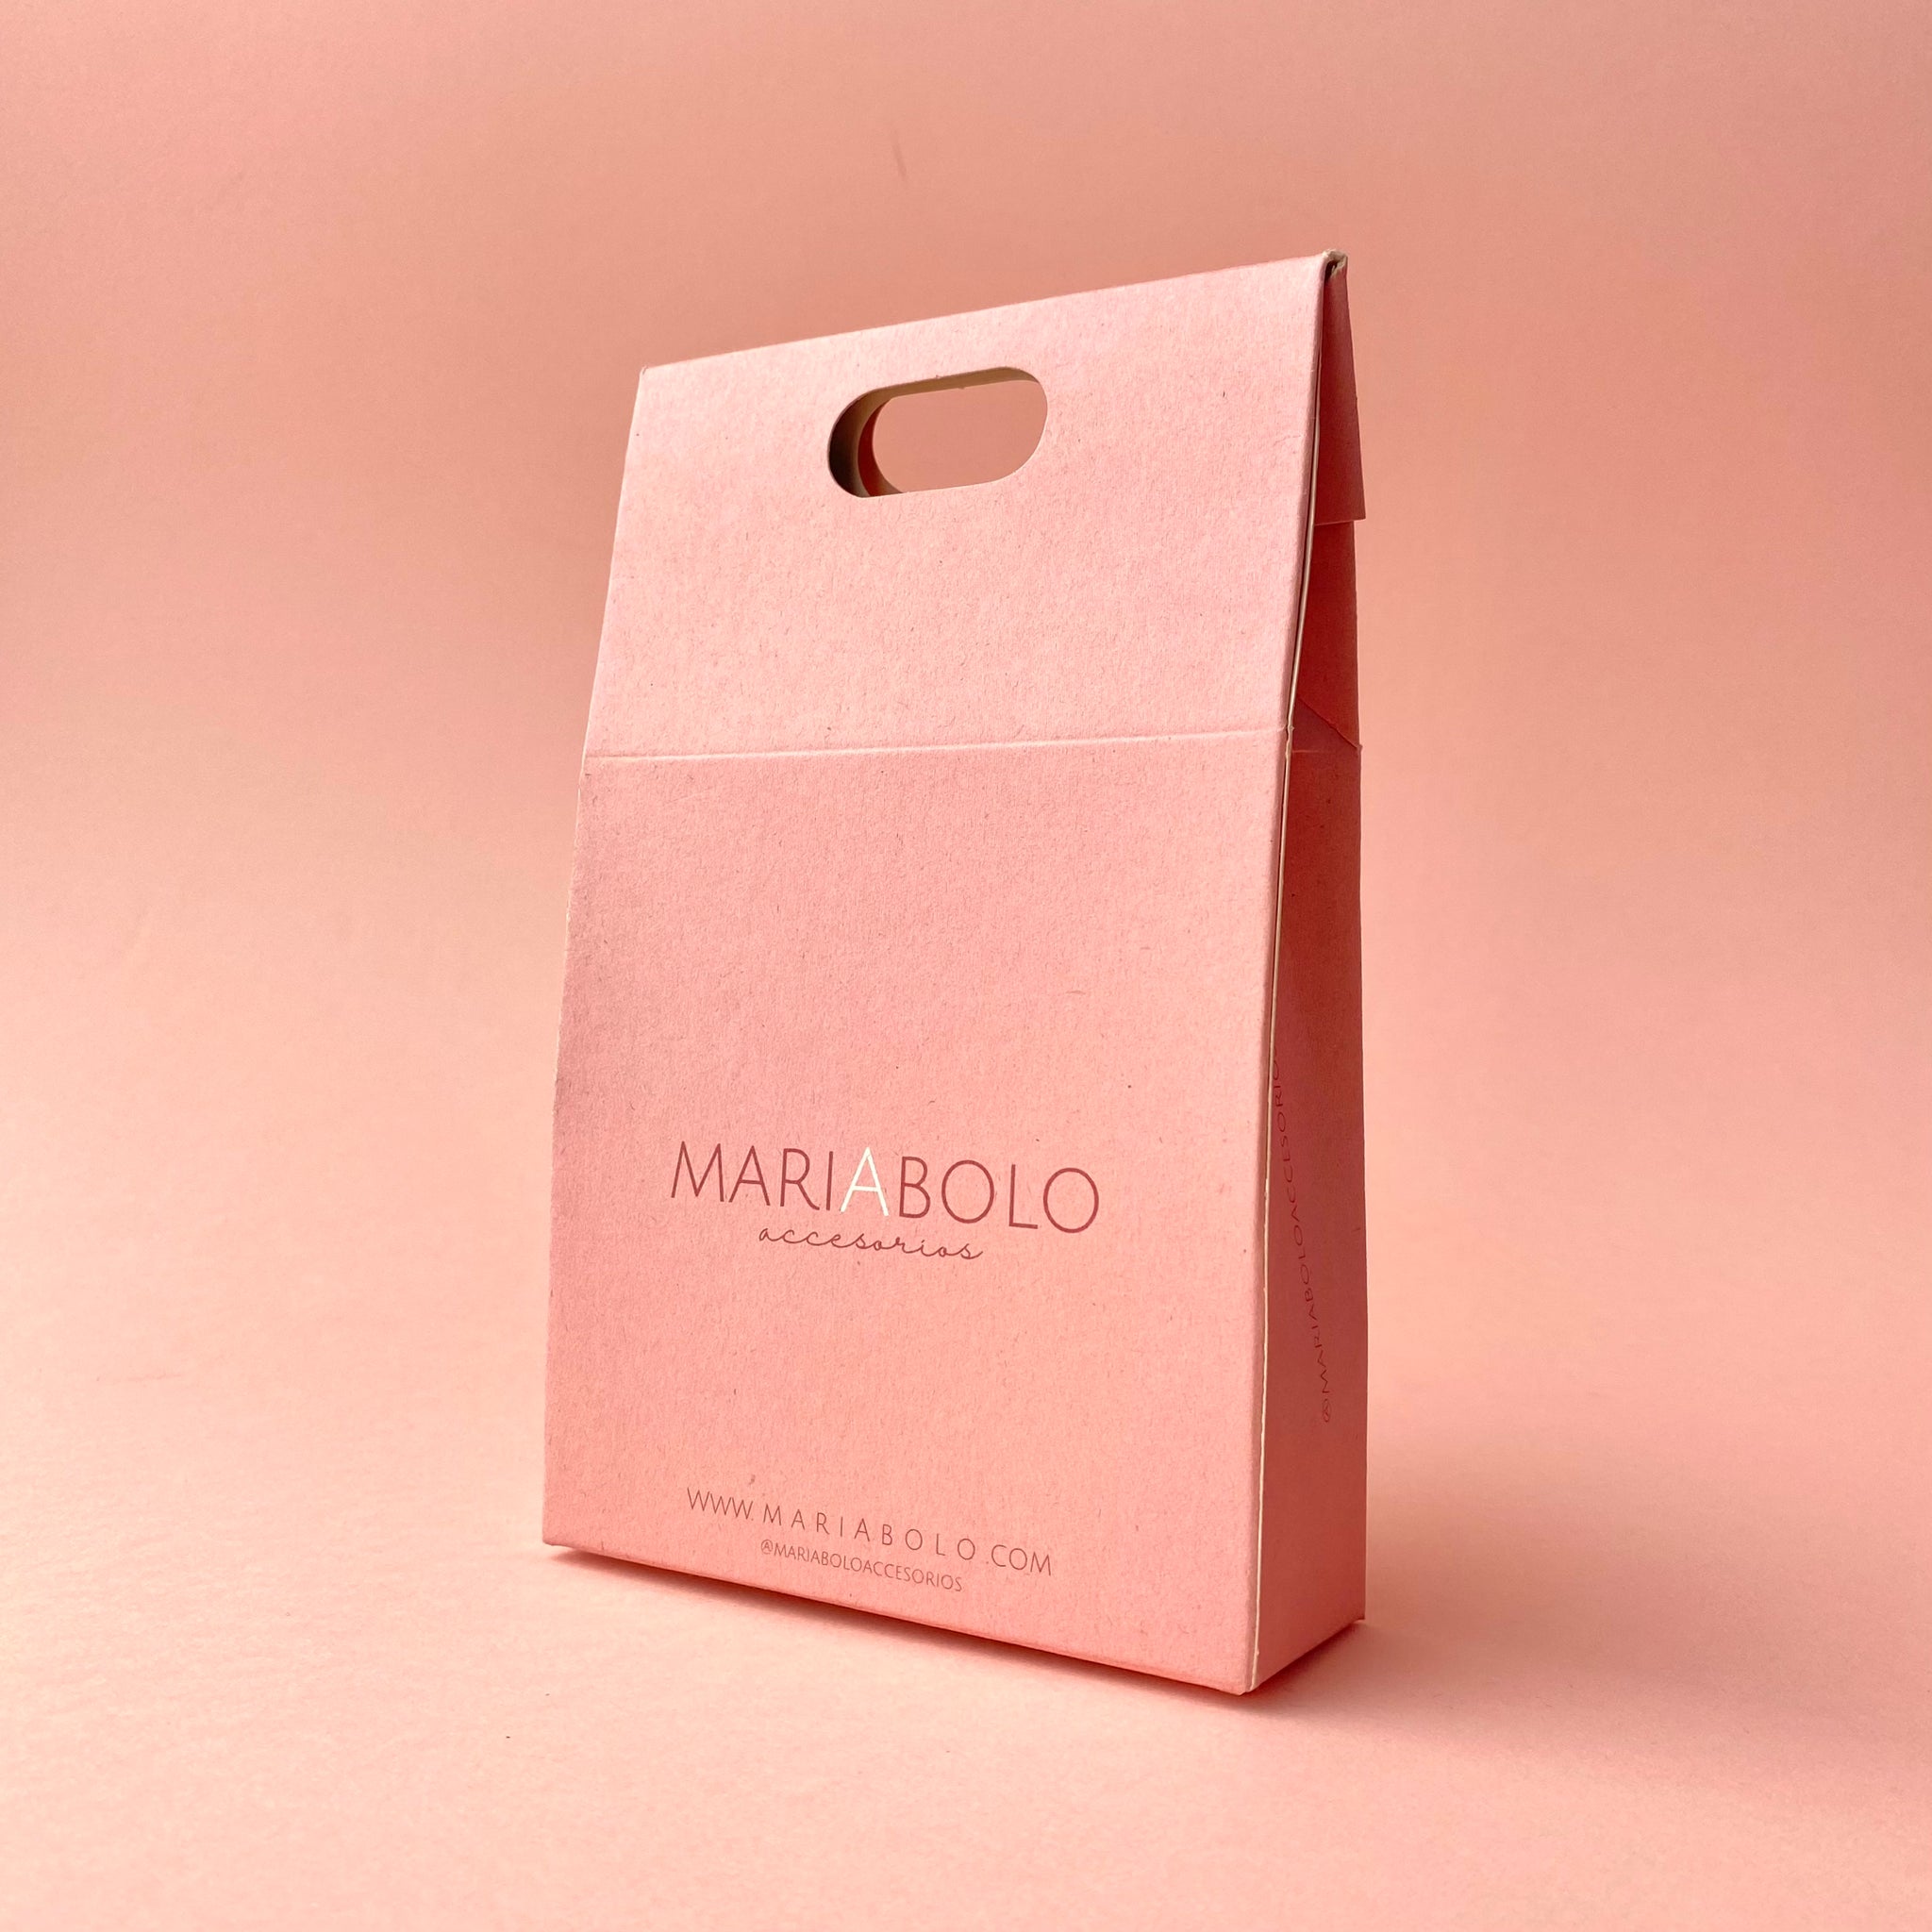 Special box - MariaBolo Accesorios